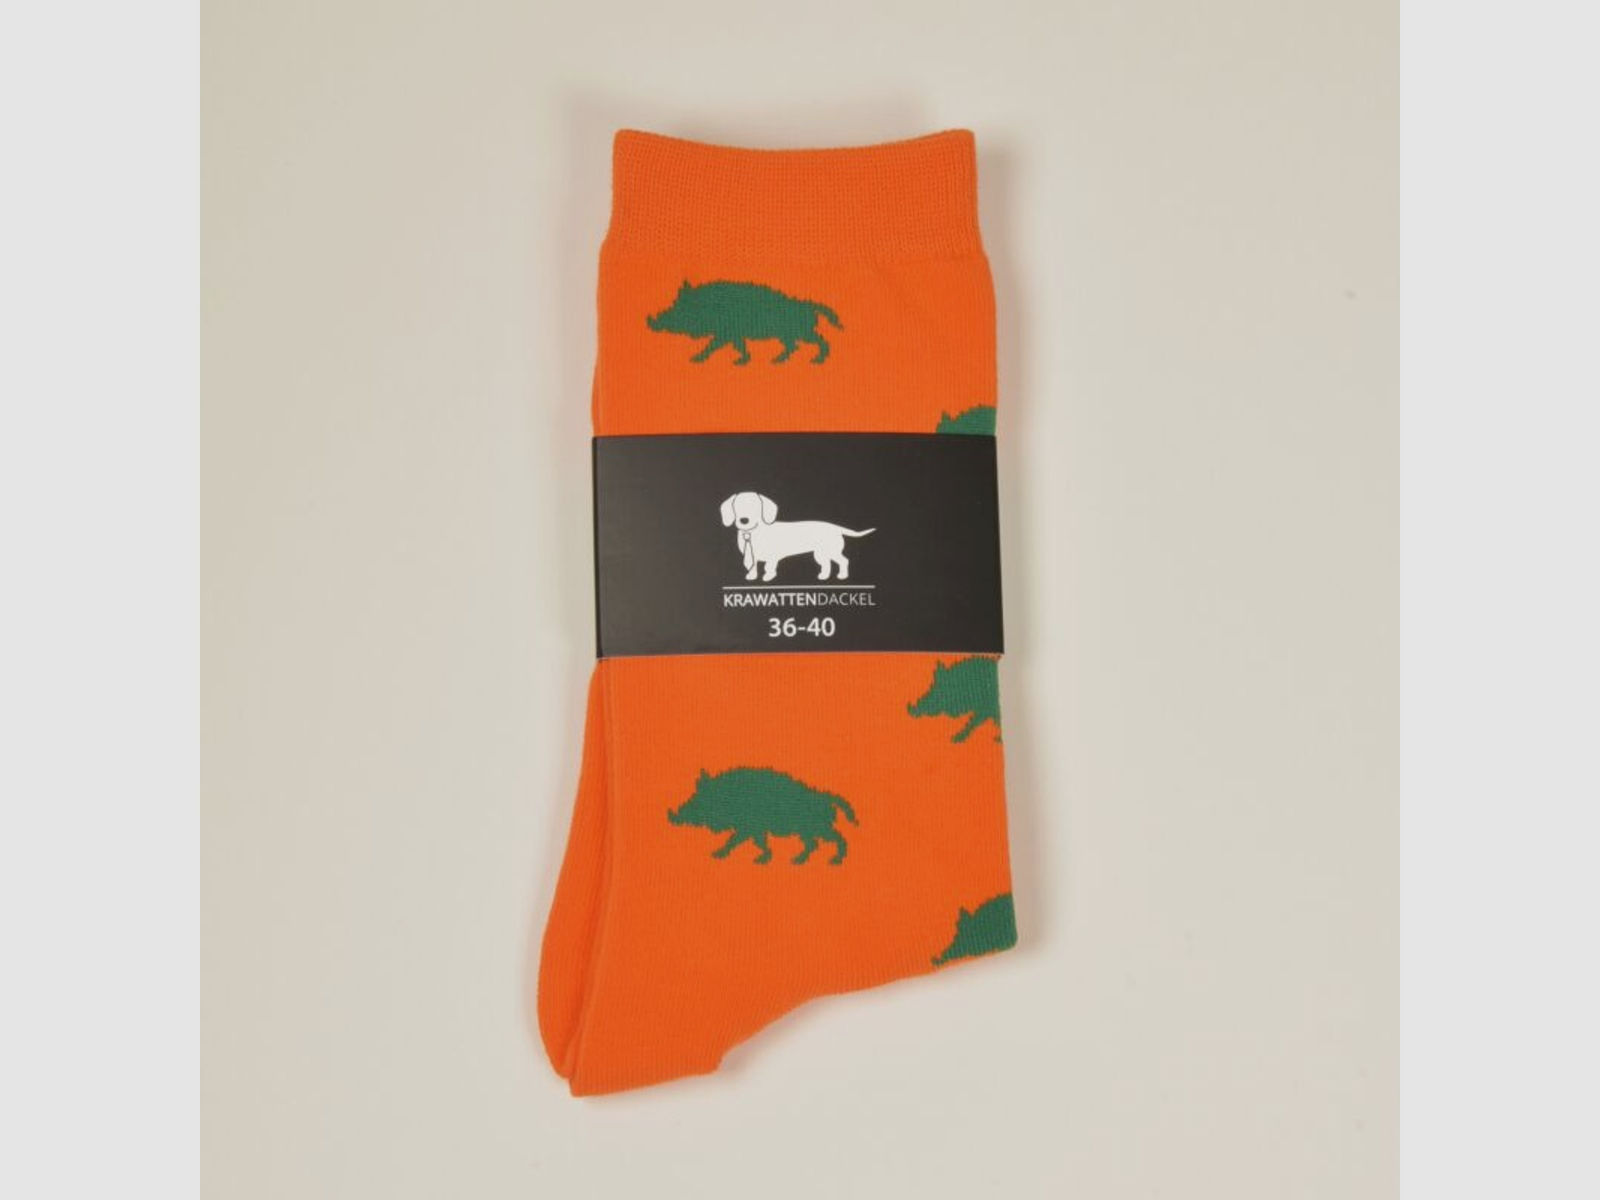 Krawattendackel Unisex Socken orange, Wildschwein grün